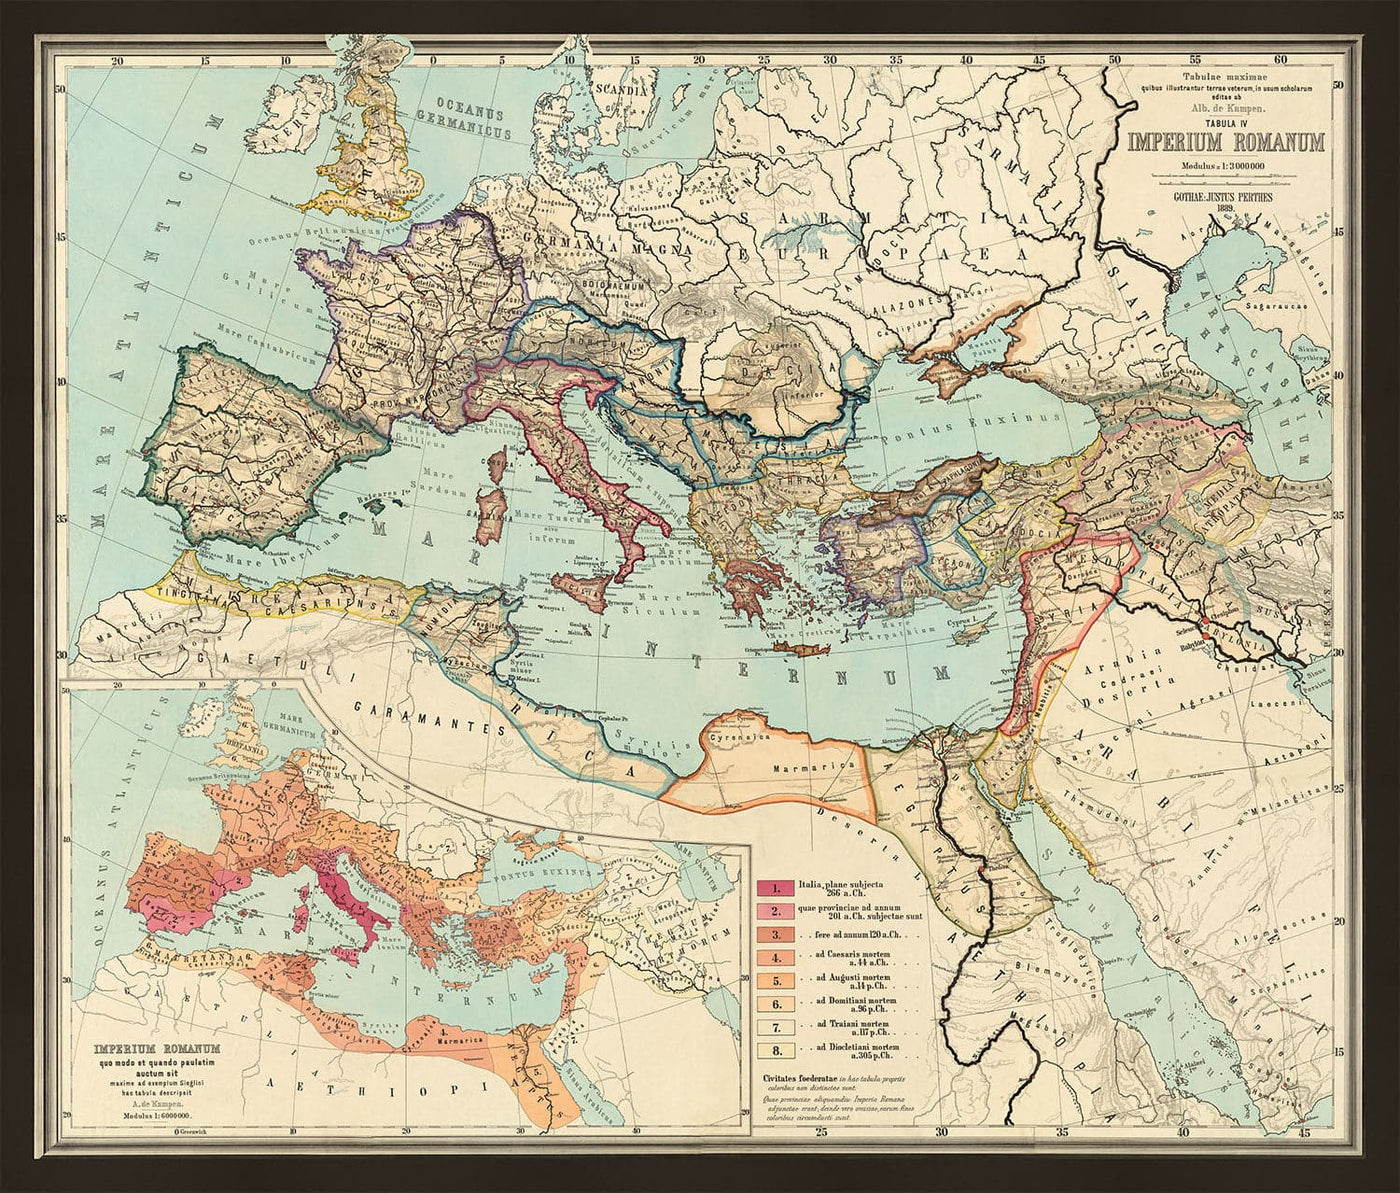 Vieux Carte du monde Empire Roman à partir de 266BC à 305ad par Perthes & Kampen, 1889 - Carte rare de Byzantine, West et Est Empire romain